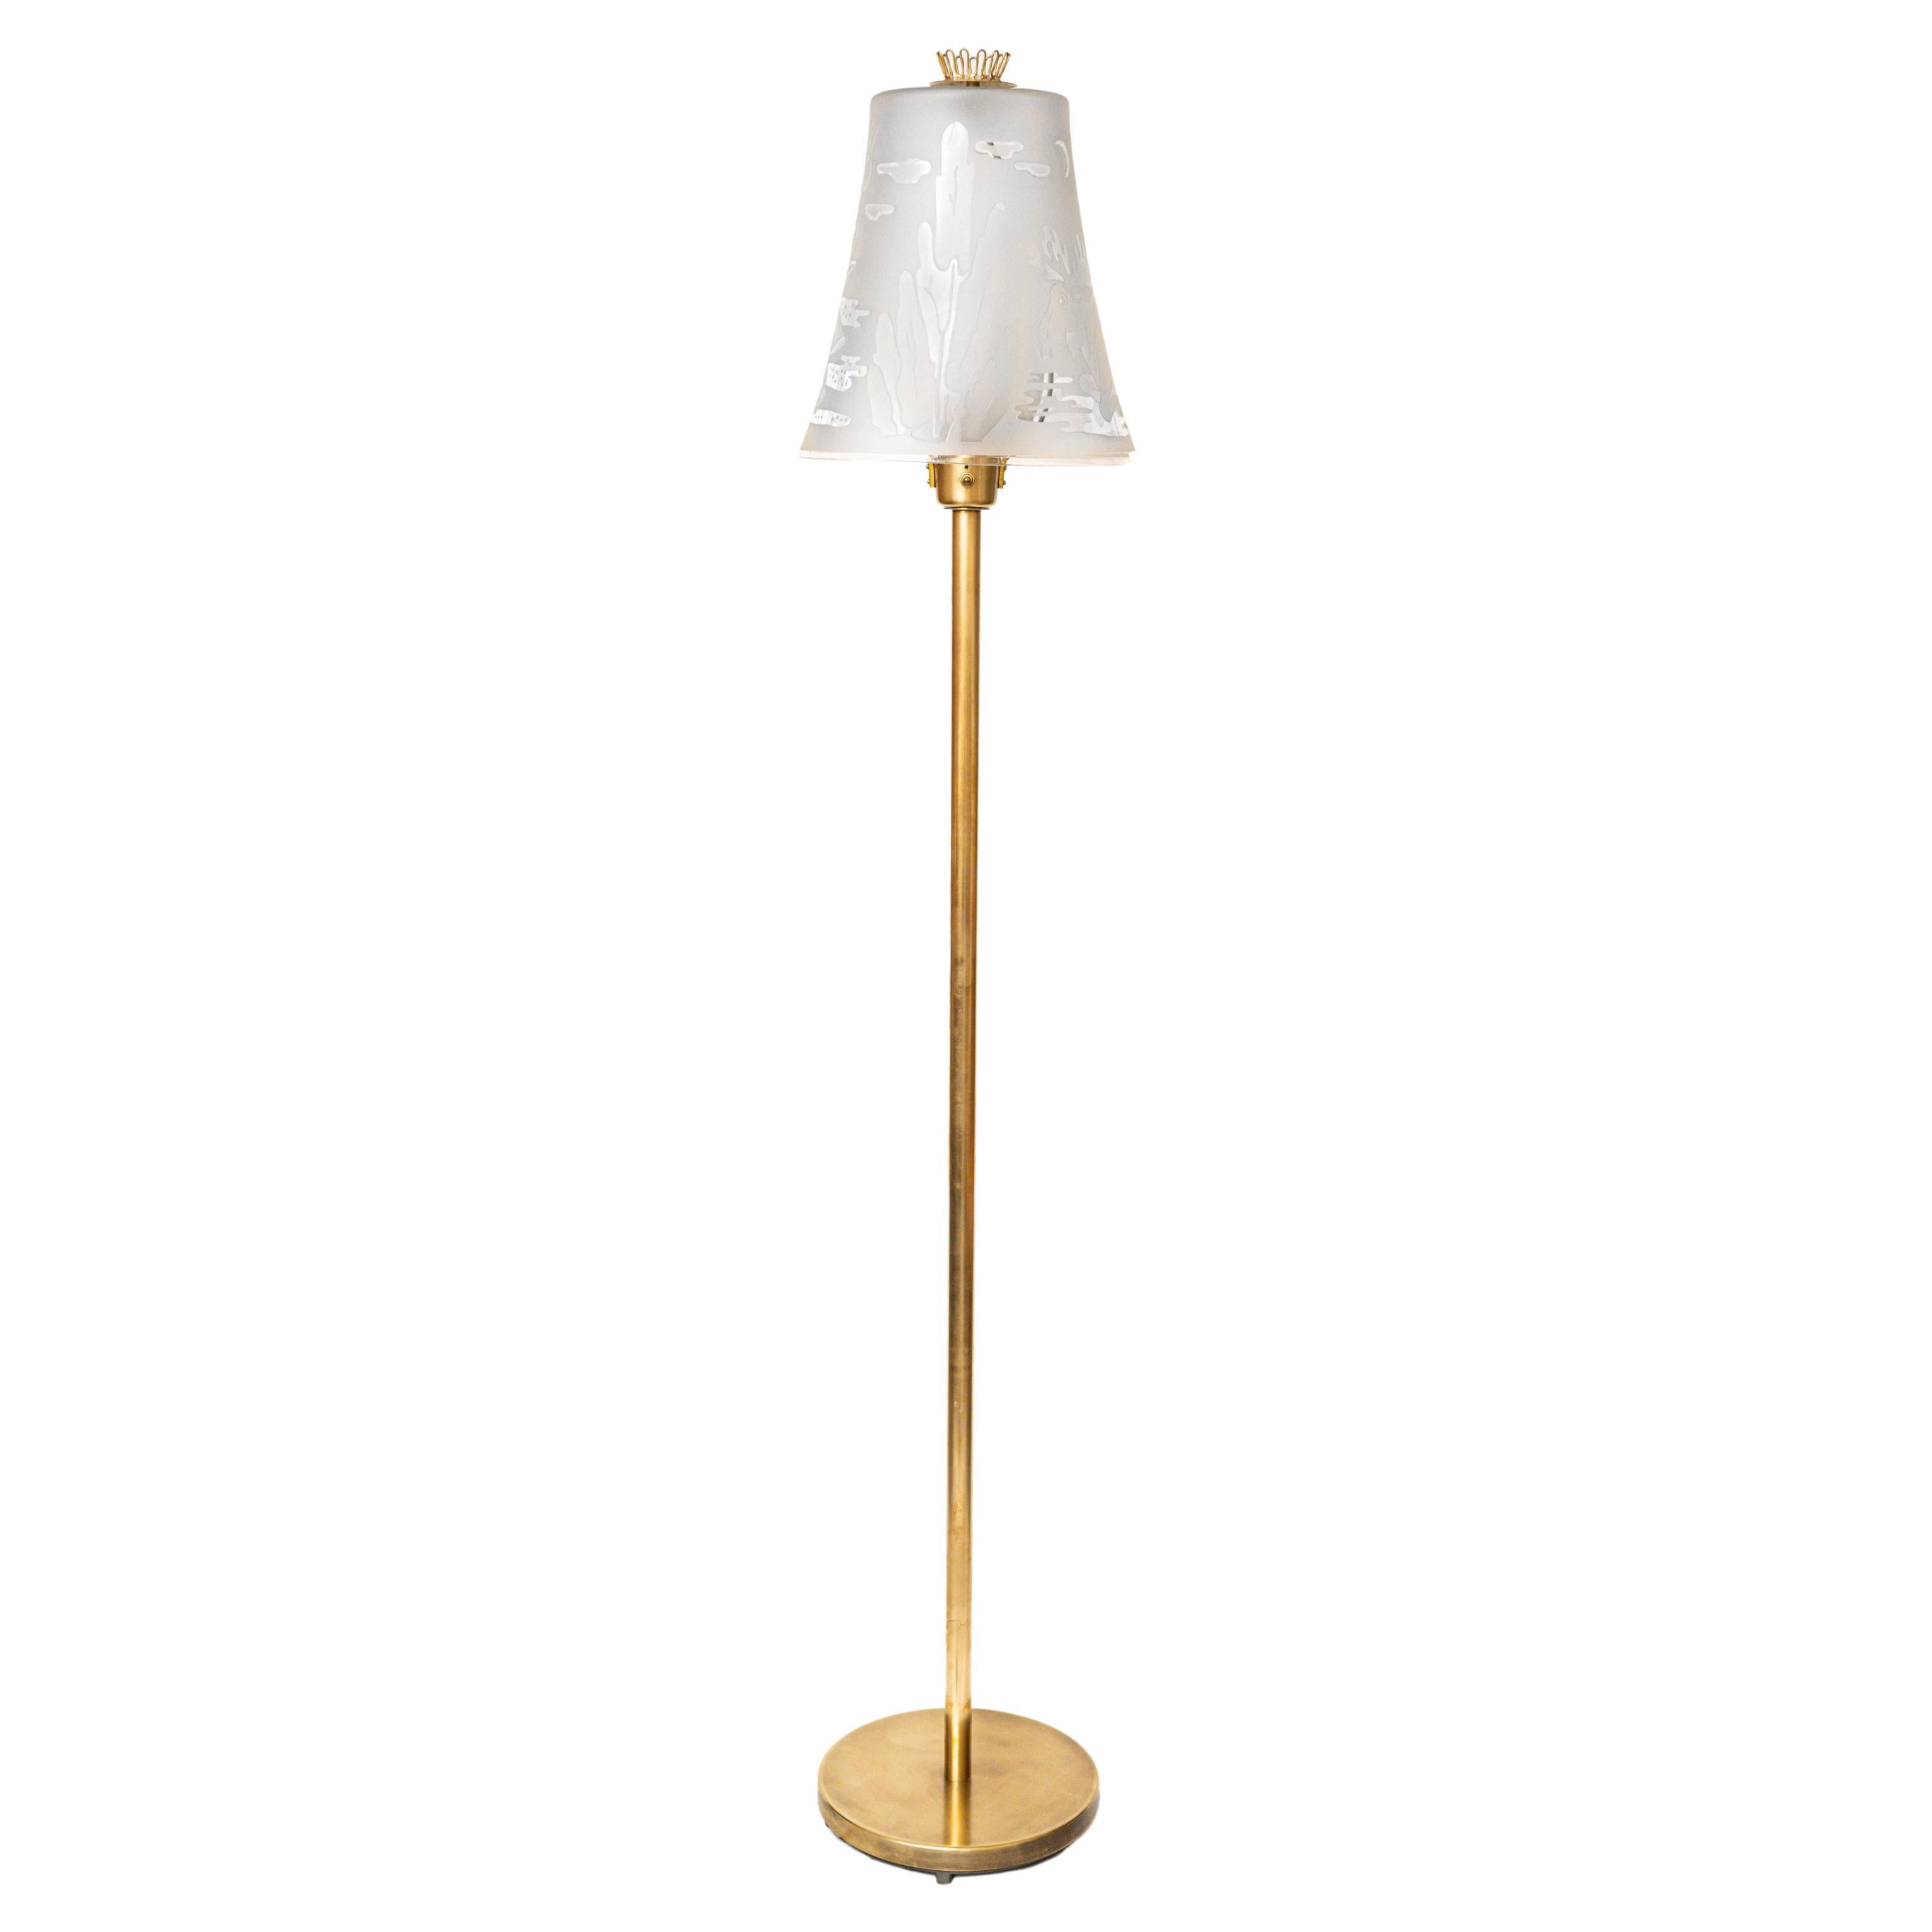 1940s U. Skogh Floor Lamp Produced by Glössner & Co. For Sale